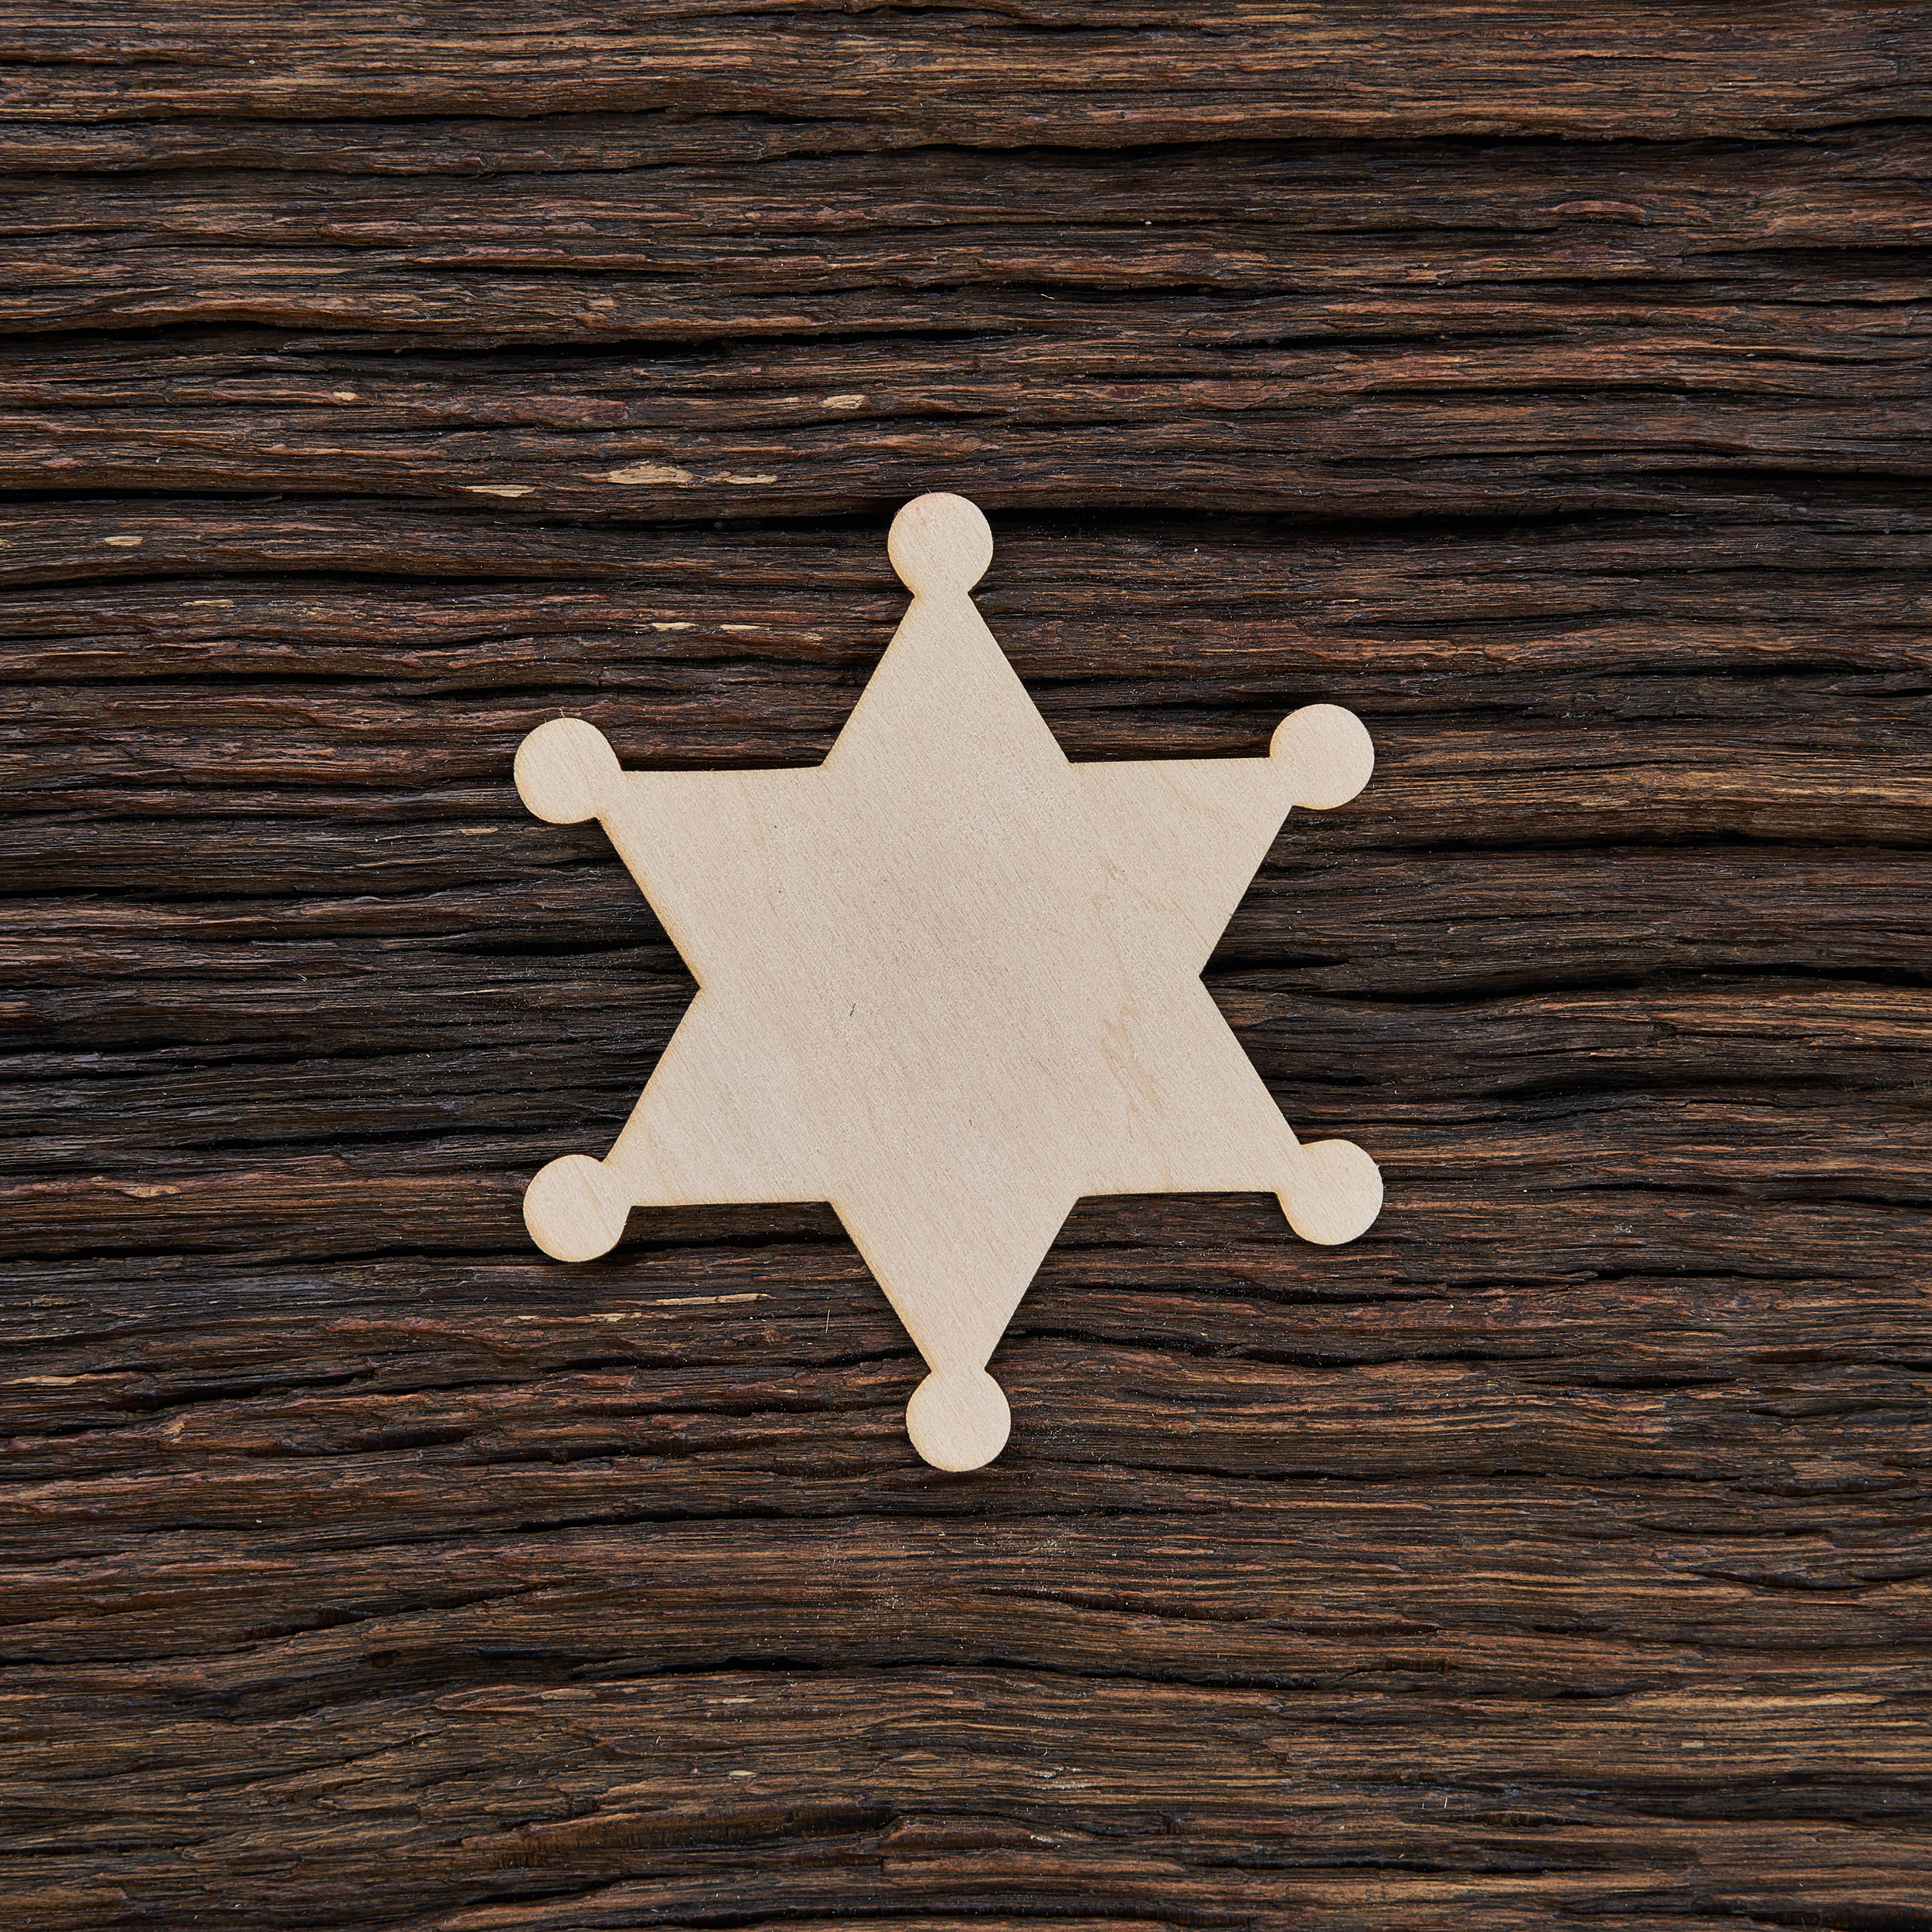 6Šerifo žvaigždė - medinis gaminys, pjautas lazeriu - dekoravimui ir dažymui